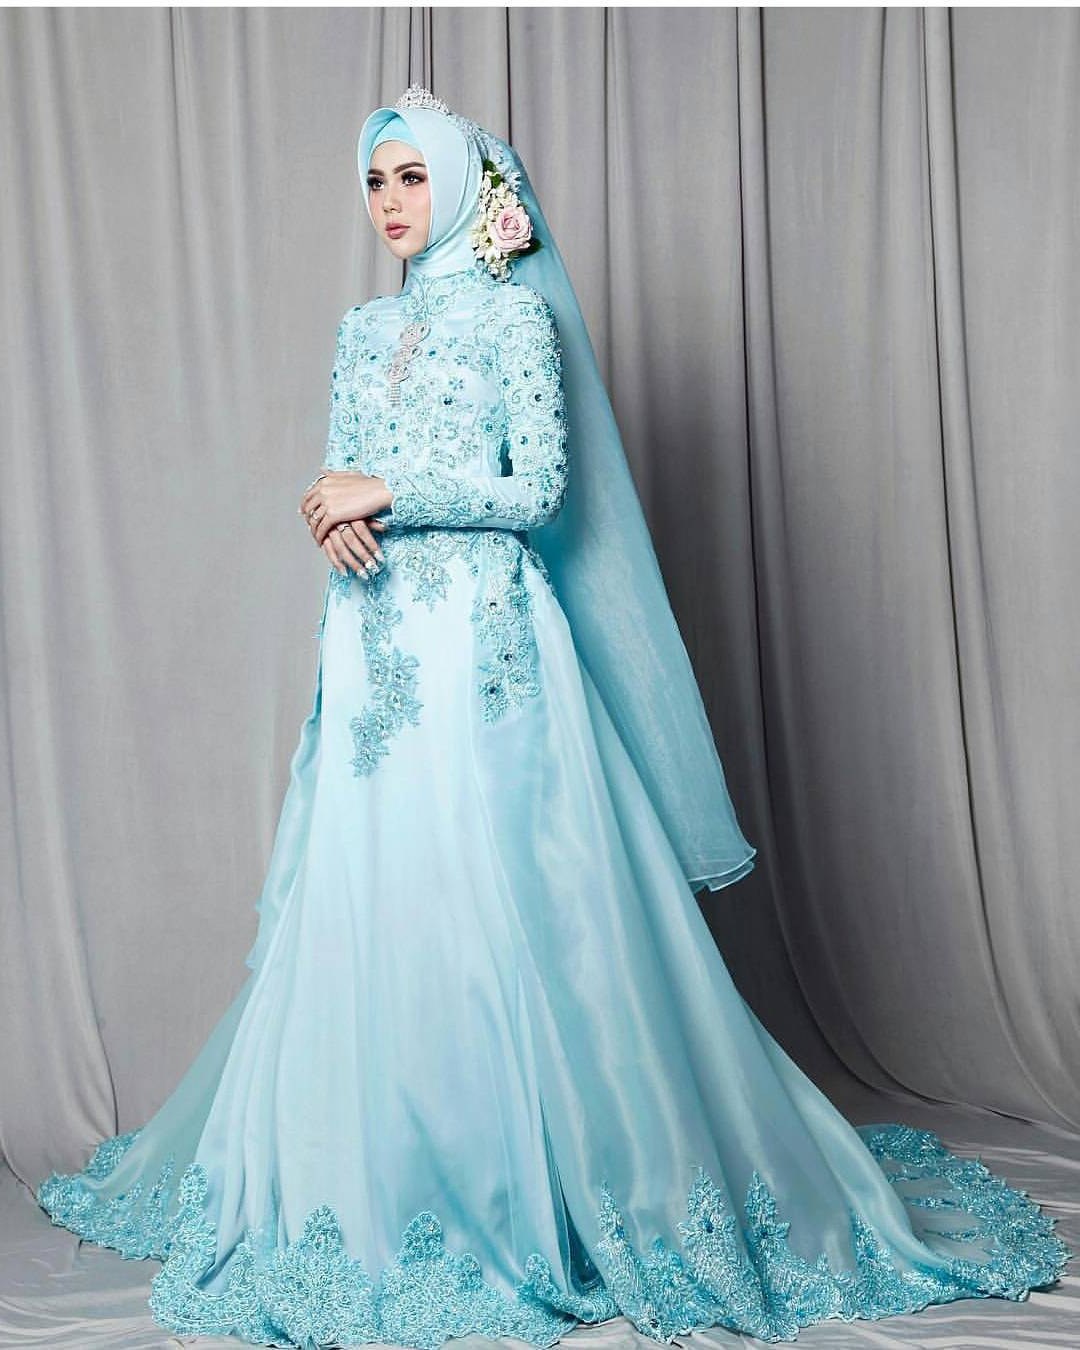 Ide Dress Pernikahan Muslimah 9fdy 17 Model Baju Pengantin Muslim 2018 Desain Elegan Cantik